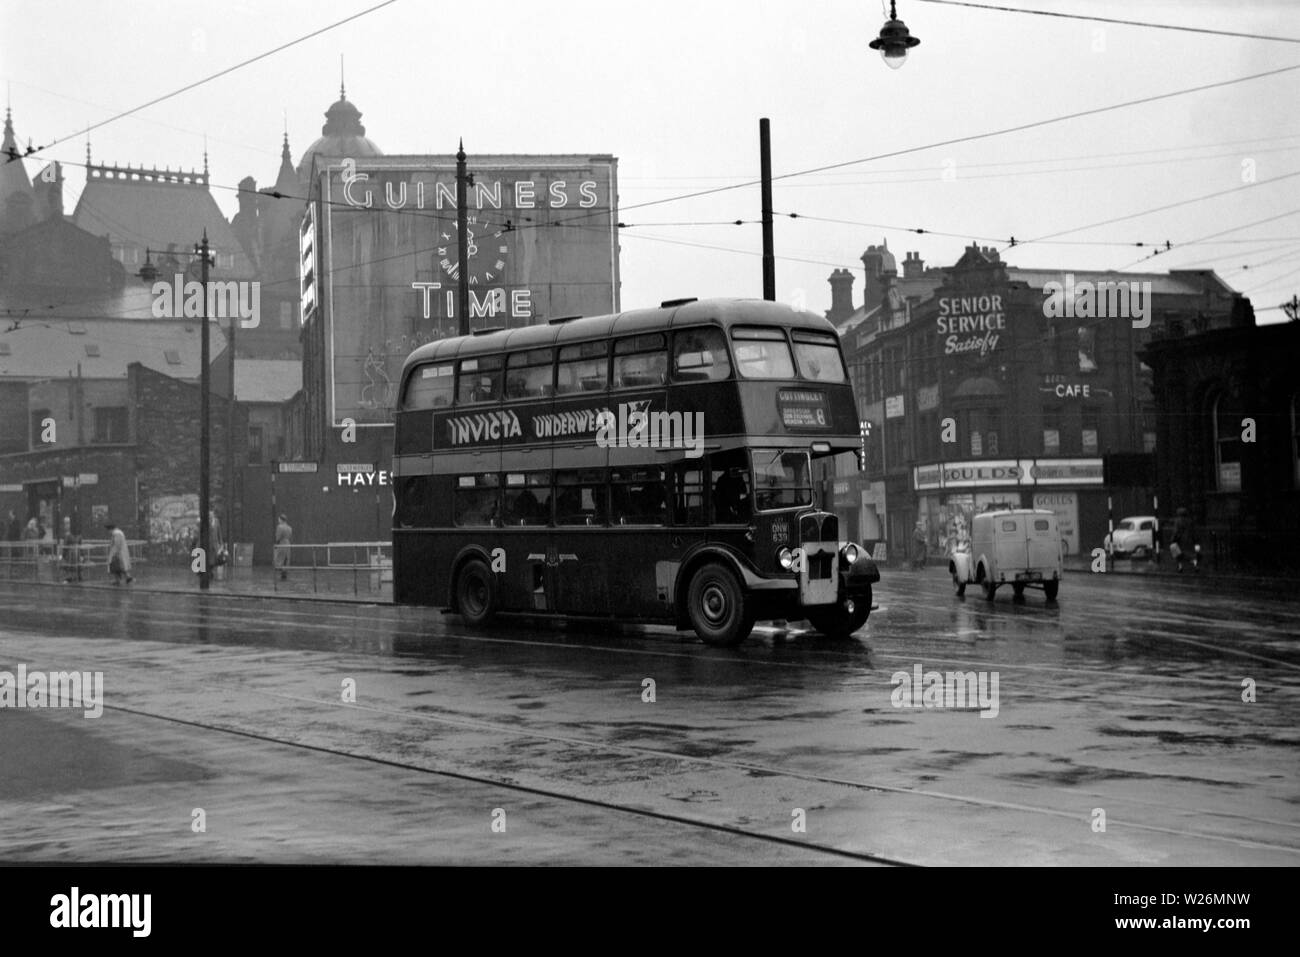 Un jour de pluie près de The Corn Exchange dans le centre-ville de Leeds. L'image montre un corps re AEC Regent III double decker bus sur la route de Cottingley. Le véhicule aurait été de nouveau en 1950. Remarque l'ancienne horloge Guinness annonce dans l'arrière-plan. Banque D'Images